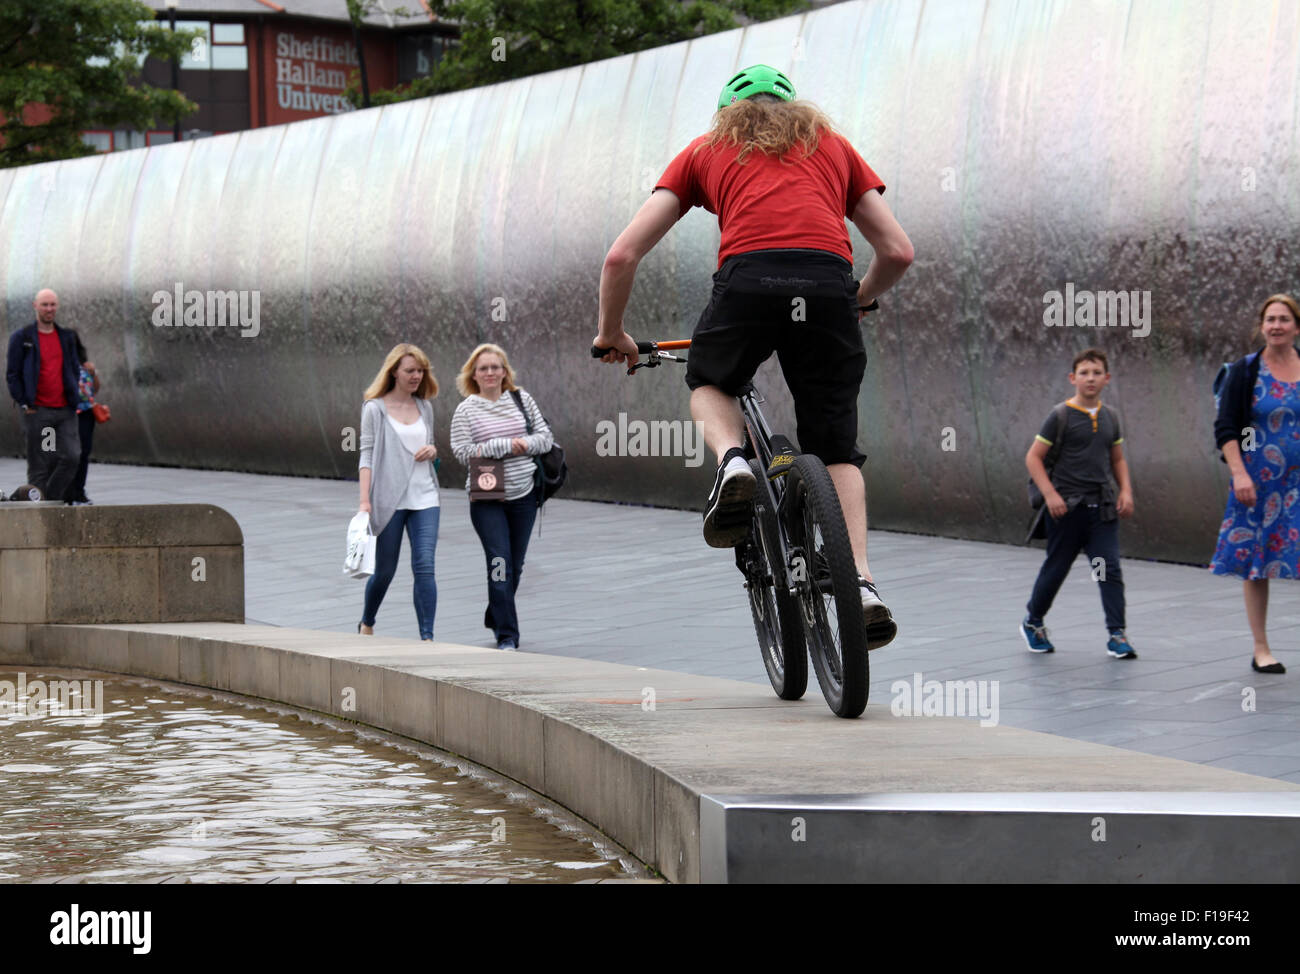 Stunt ciclista al bordo di taglio della scultura in acciaio e funzione di acqua al di fuori di Sheffield stazione ferroviaria Foto Stock